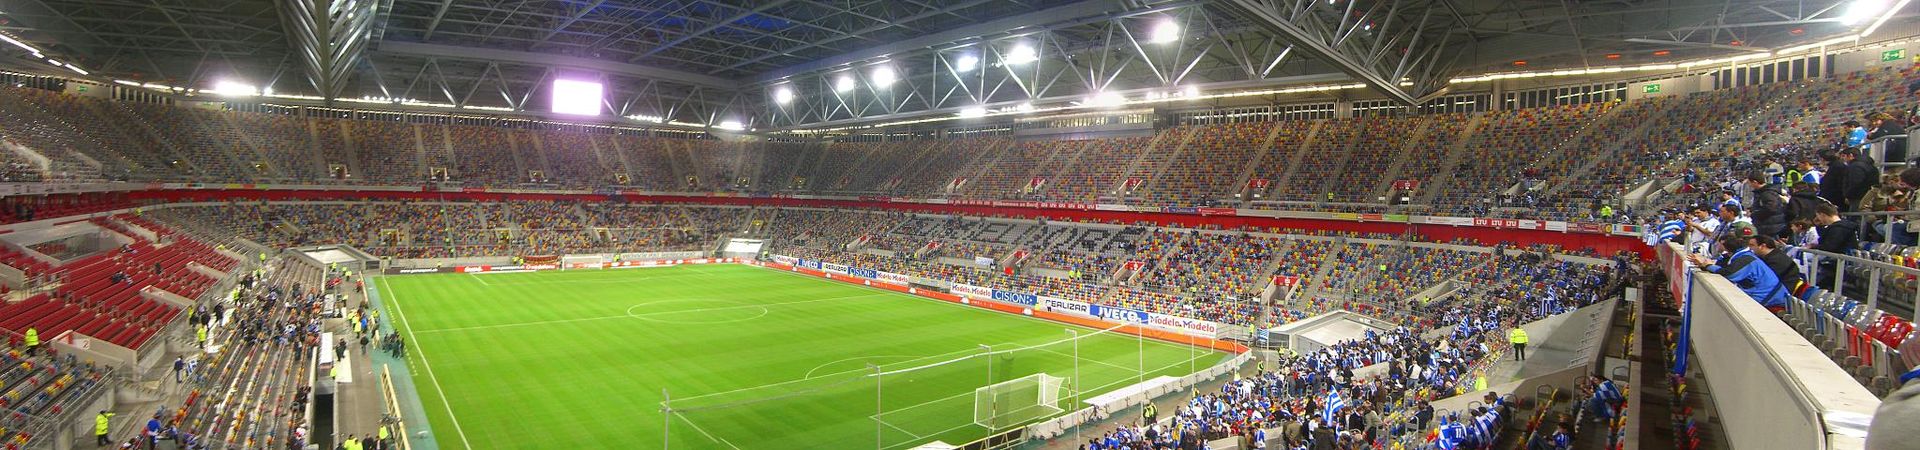 Die bunten Sitze in der ESPRIT arena / MERKUR SPIEL-ARENA sind bunt und scheinbar wahllos angeordnet. Doch sie sollen volle Ränge darstellen, wenn bei der Fernsehübertragung eines nicht ausverkauften Fußballspiels die Zuschauer gezeigt werden.